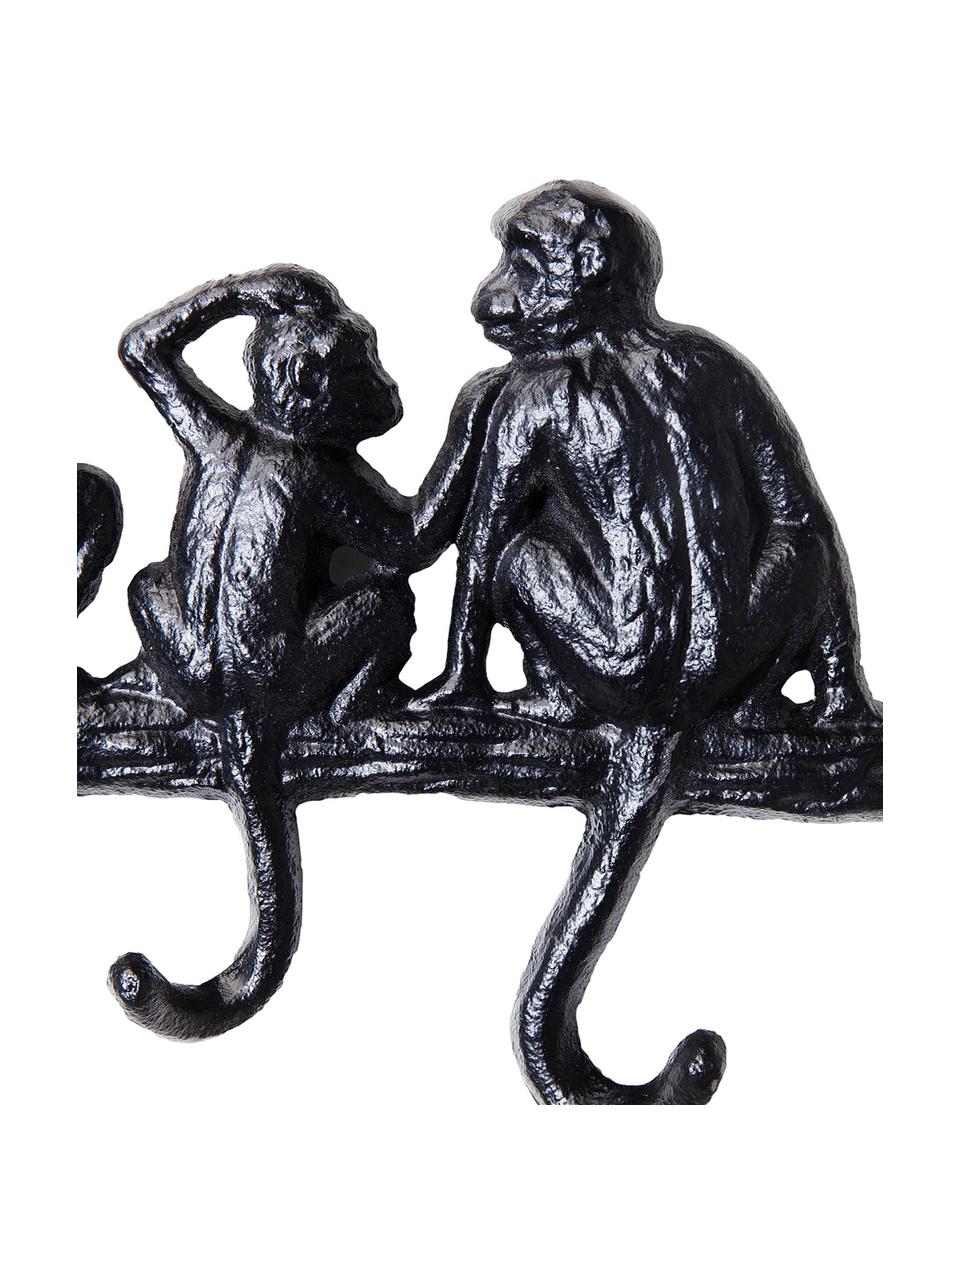 Garderobenleiste Monkey in Schwarz, Metall, pulverbeschichtet, Schwarz, B 31 x H 14 cm